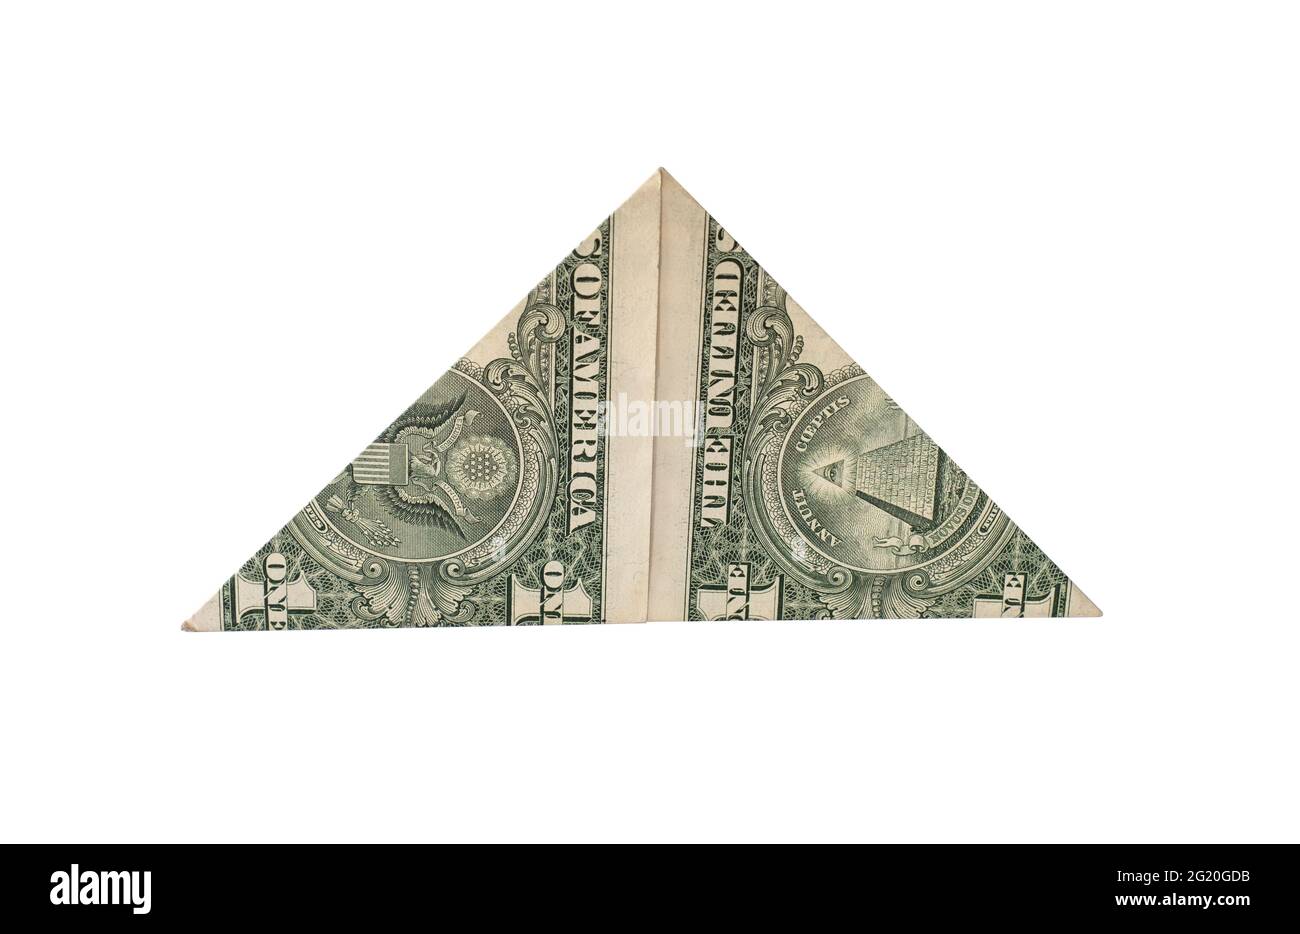 Dollarnote, die in eine Pyramide gefaltet und in der Brieftasche getragen wird, ist ein Magnet für Geld. Volksprophezeiung, um Reichtum, Aberglauben anzuziehen. Stockfoto